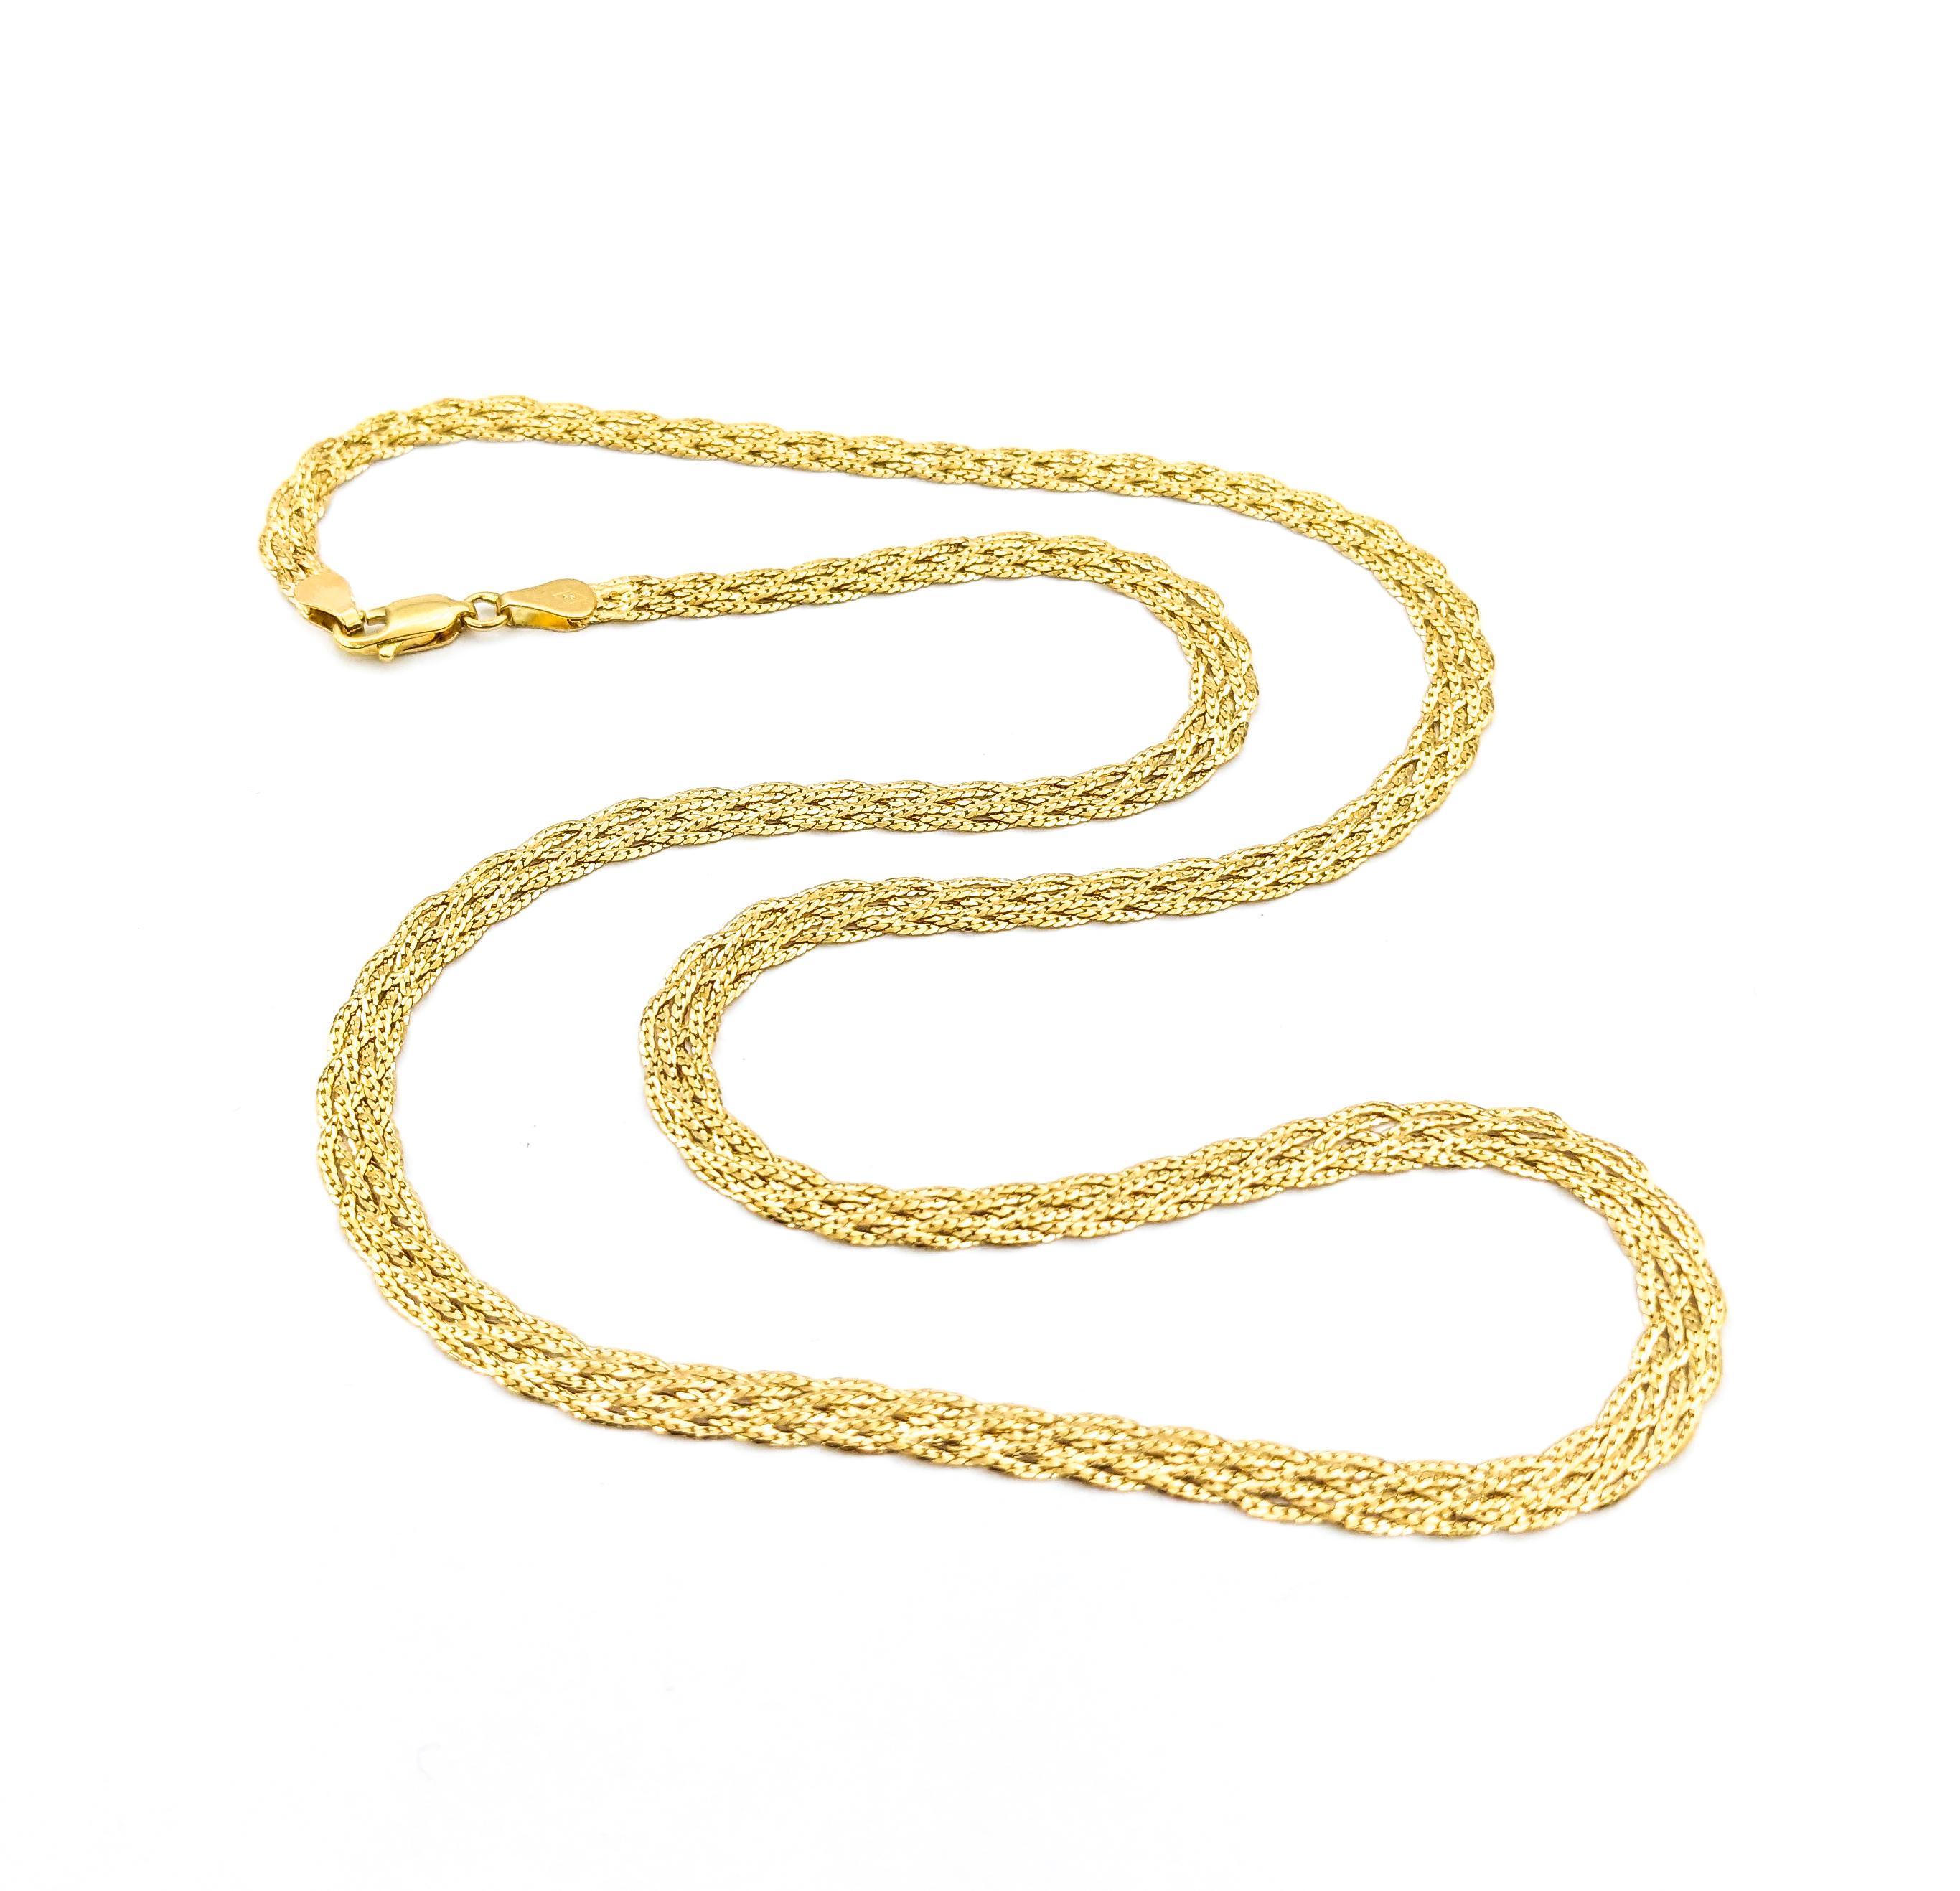 Geflochtene Gliederkette aus Gelbgold


Entdecken Sie die klassische Eleganz unserer Gold Fashion Necklace, die aus glänzendem 14-karätigem Gelbgold gefertigt ist. Dieses exquisite Stück zeichnet sich durch ein raffiniertes geflochtenes